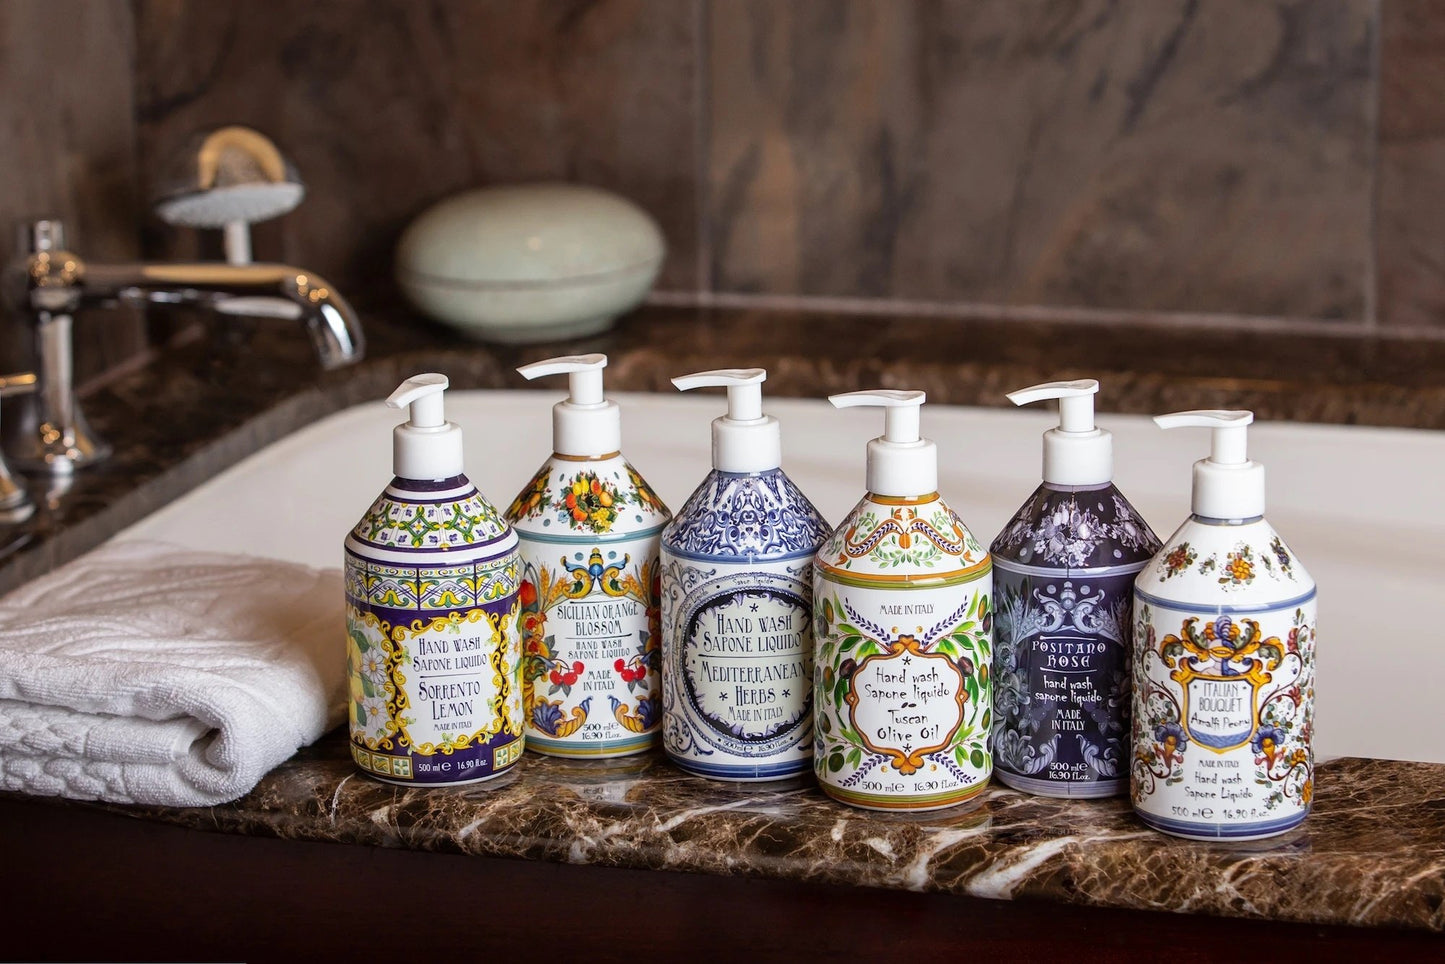 Le Maioliche | MILANO Liquid Hand Soap 500ml - |VESIMI Design| Luxury and Rustic bathrooms online